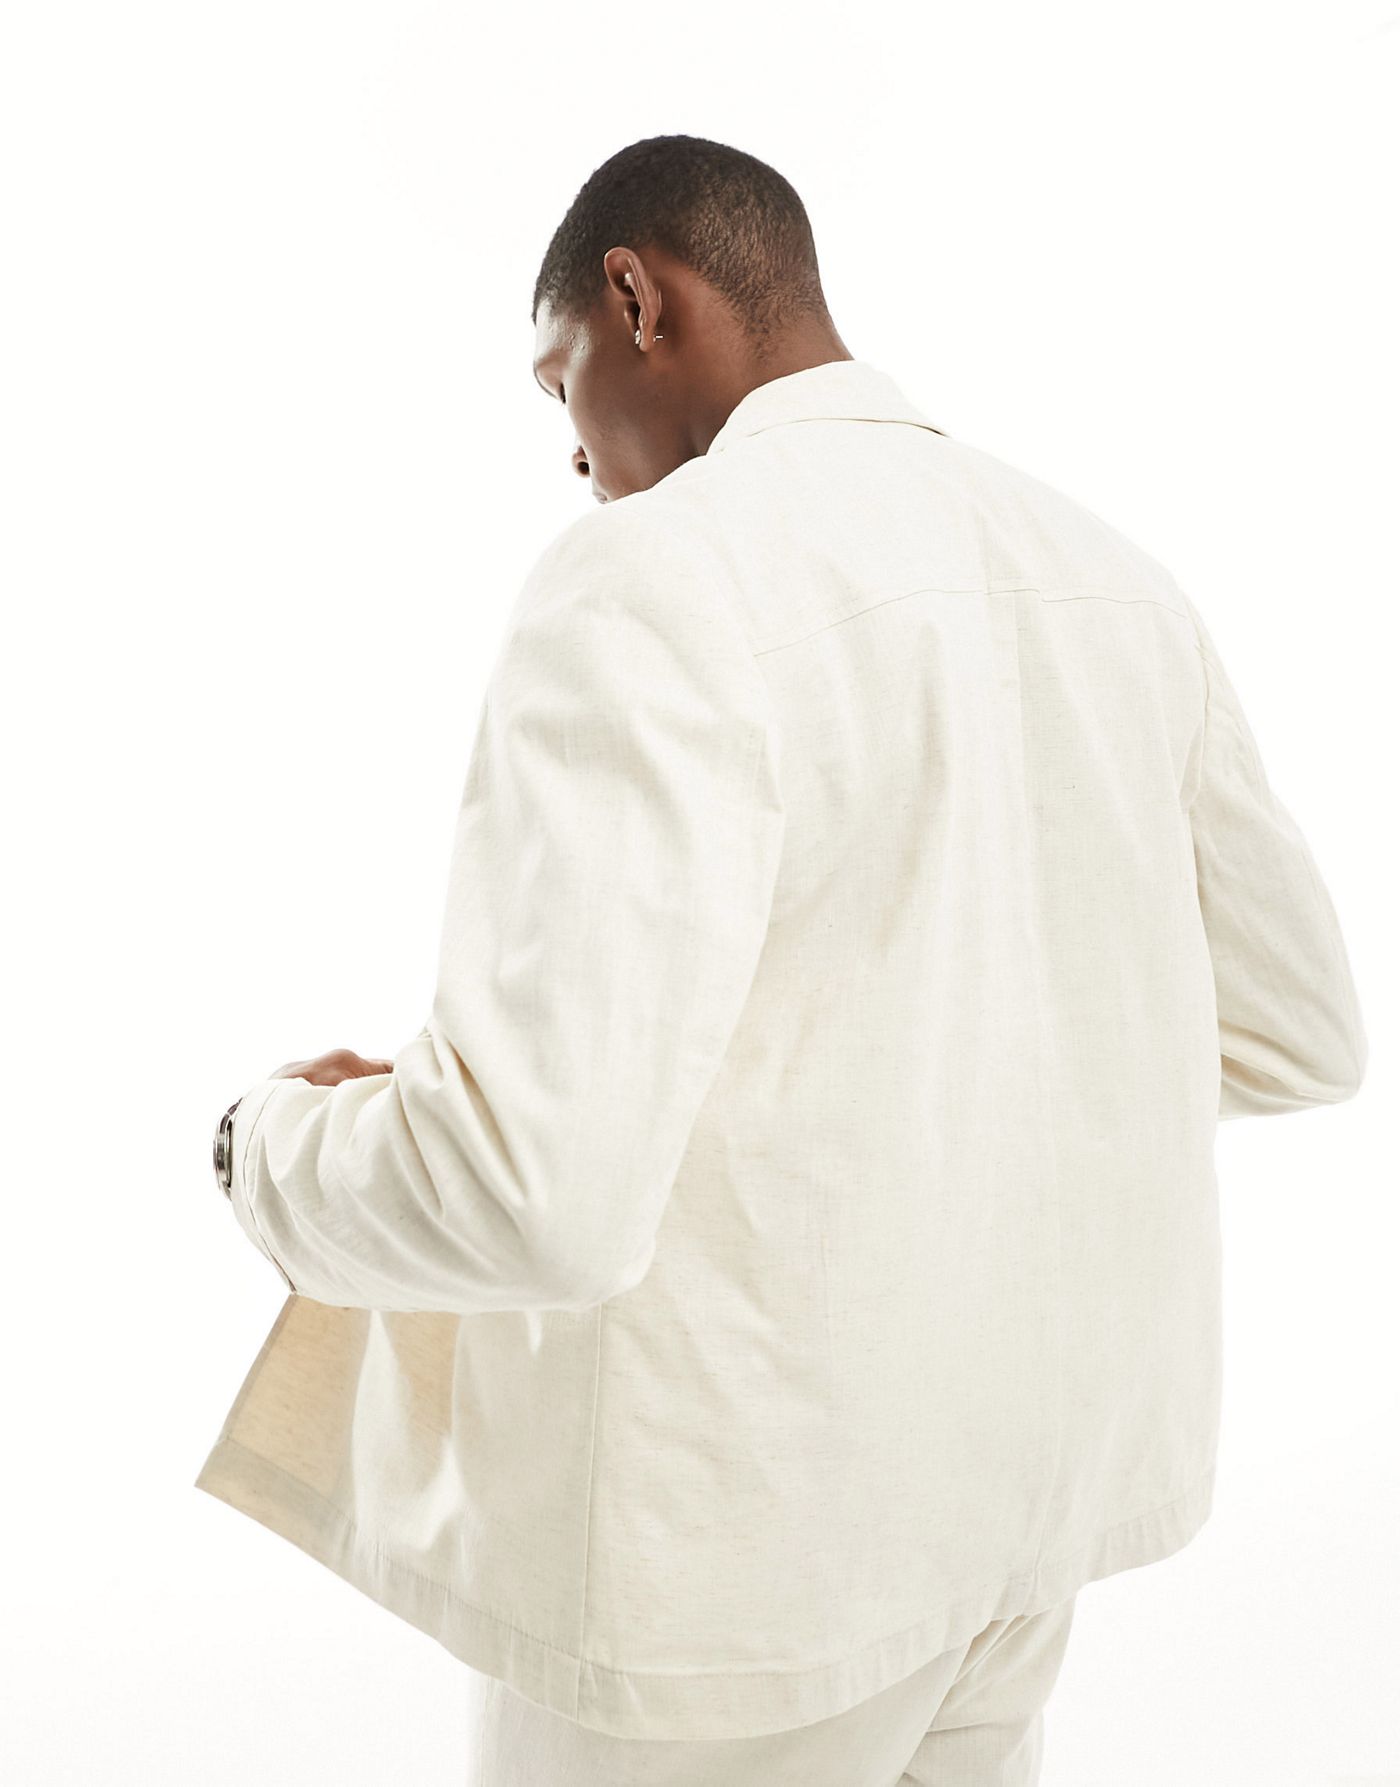 Selected Homme linen mix suit jacket in beige